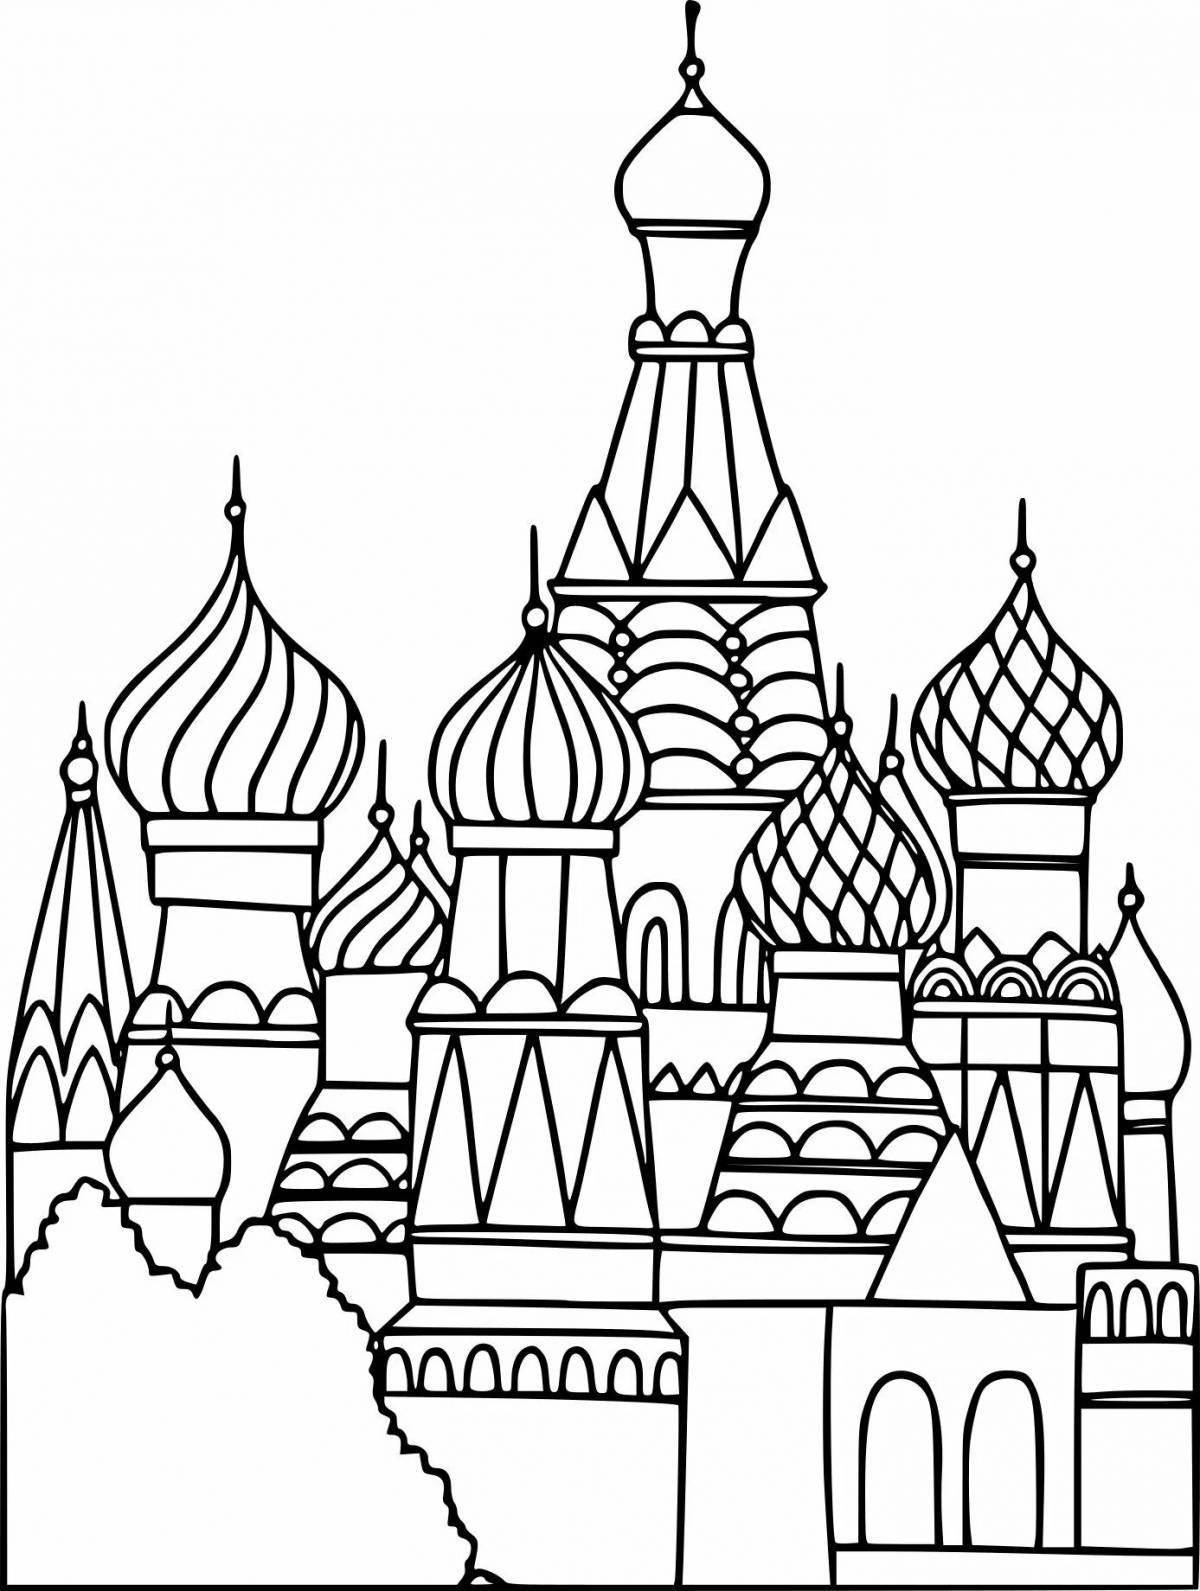 Заманчивый рисунок кремля для детей